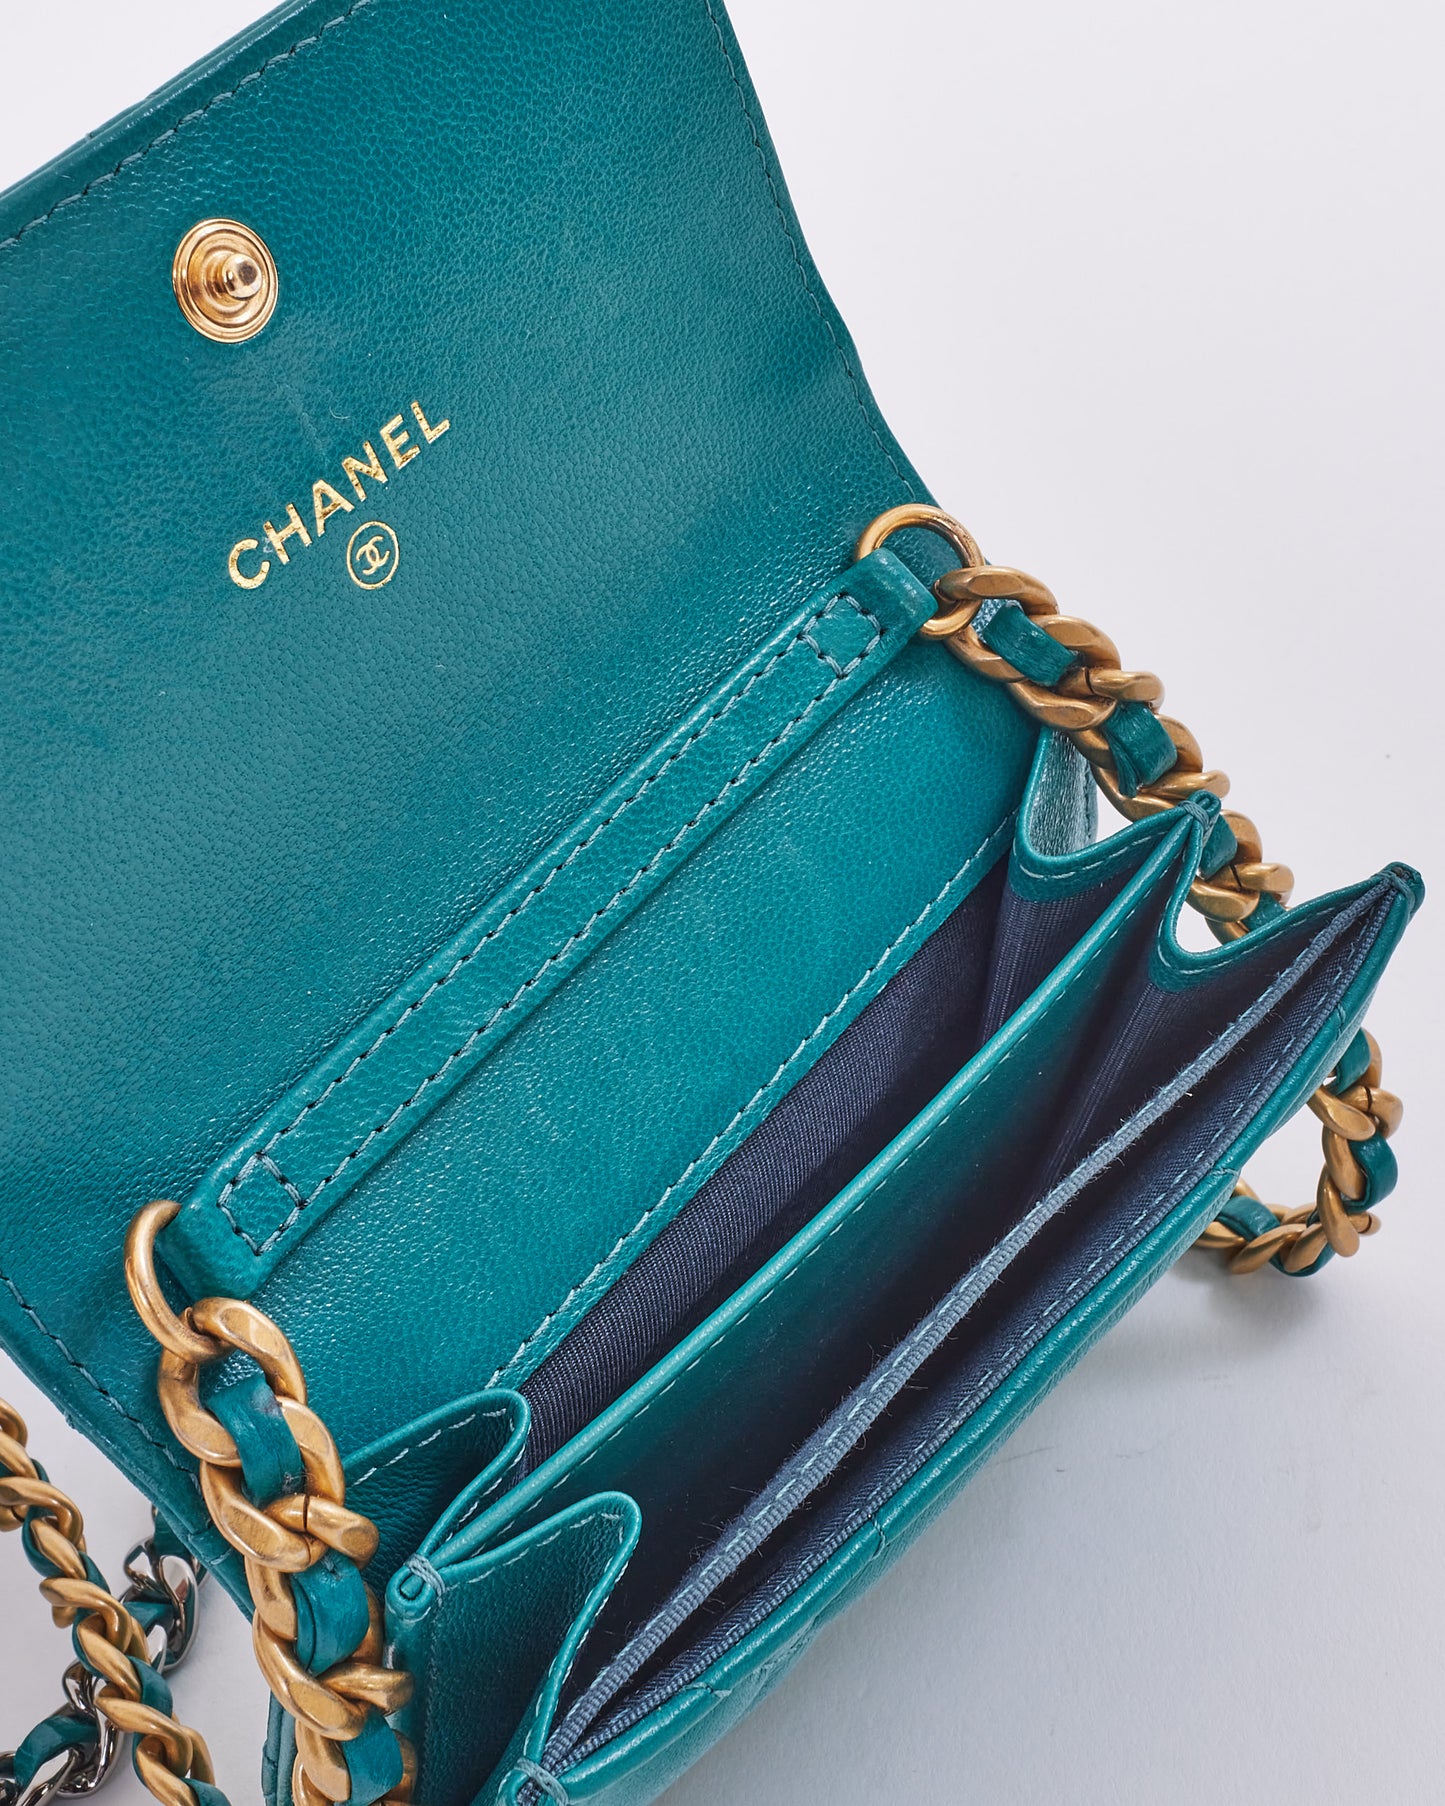 Pochette Chanel 19 pièces vert turquoise sur chaîne